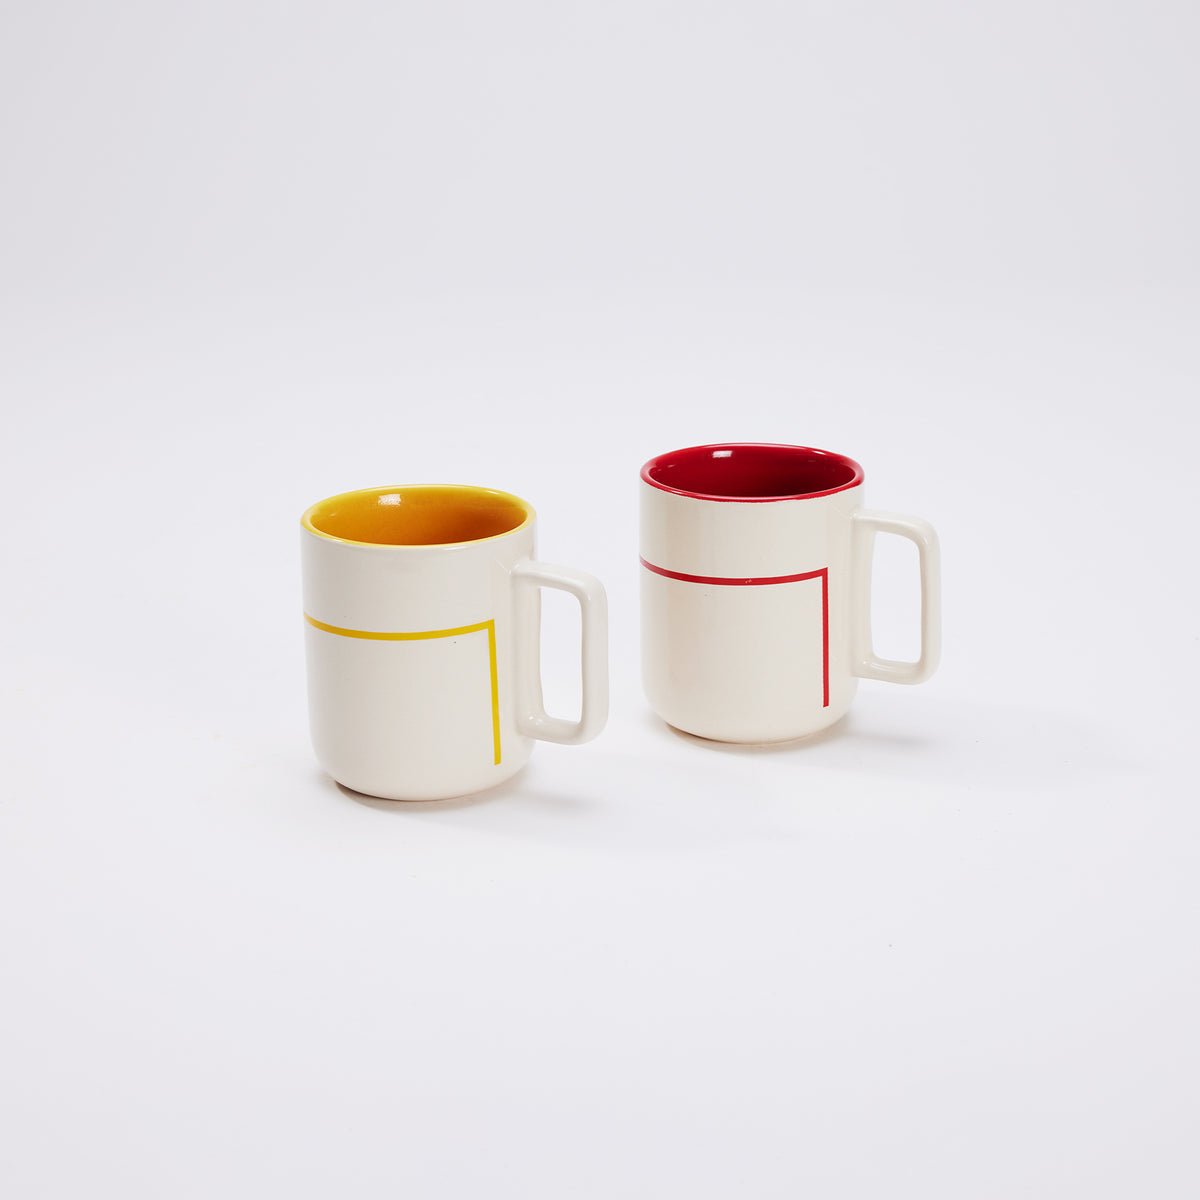 Bauhaus Coffee Mugs - Set of 2